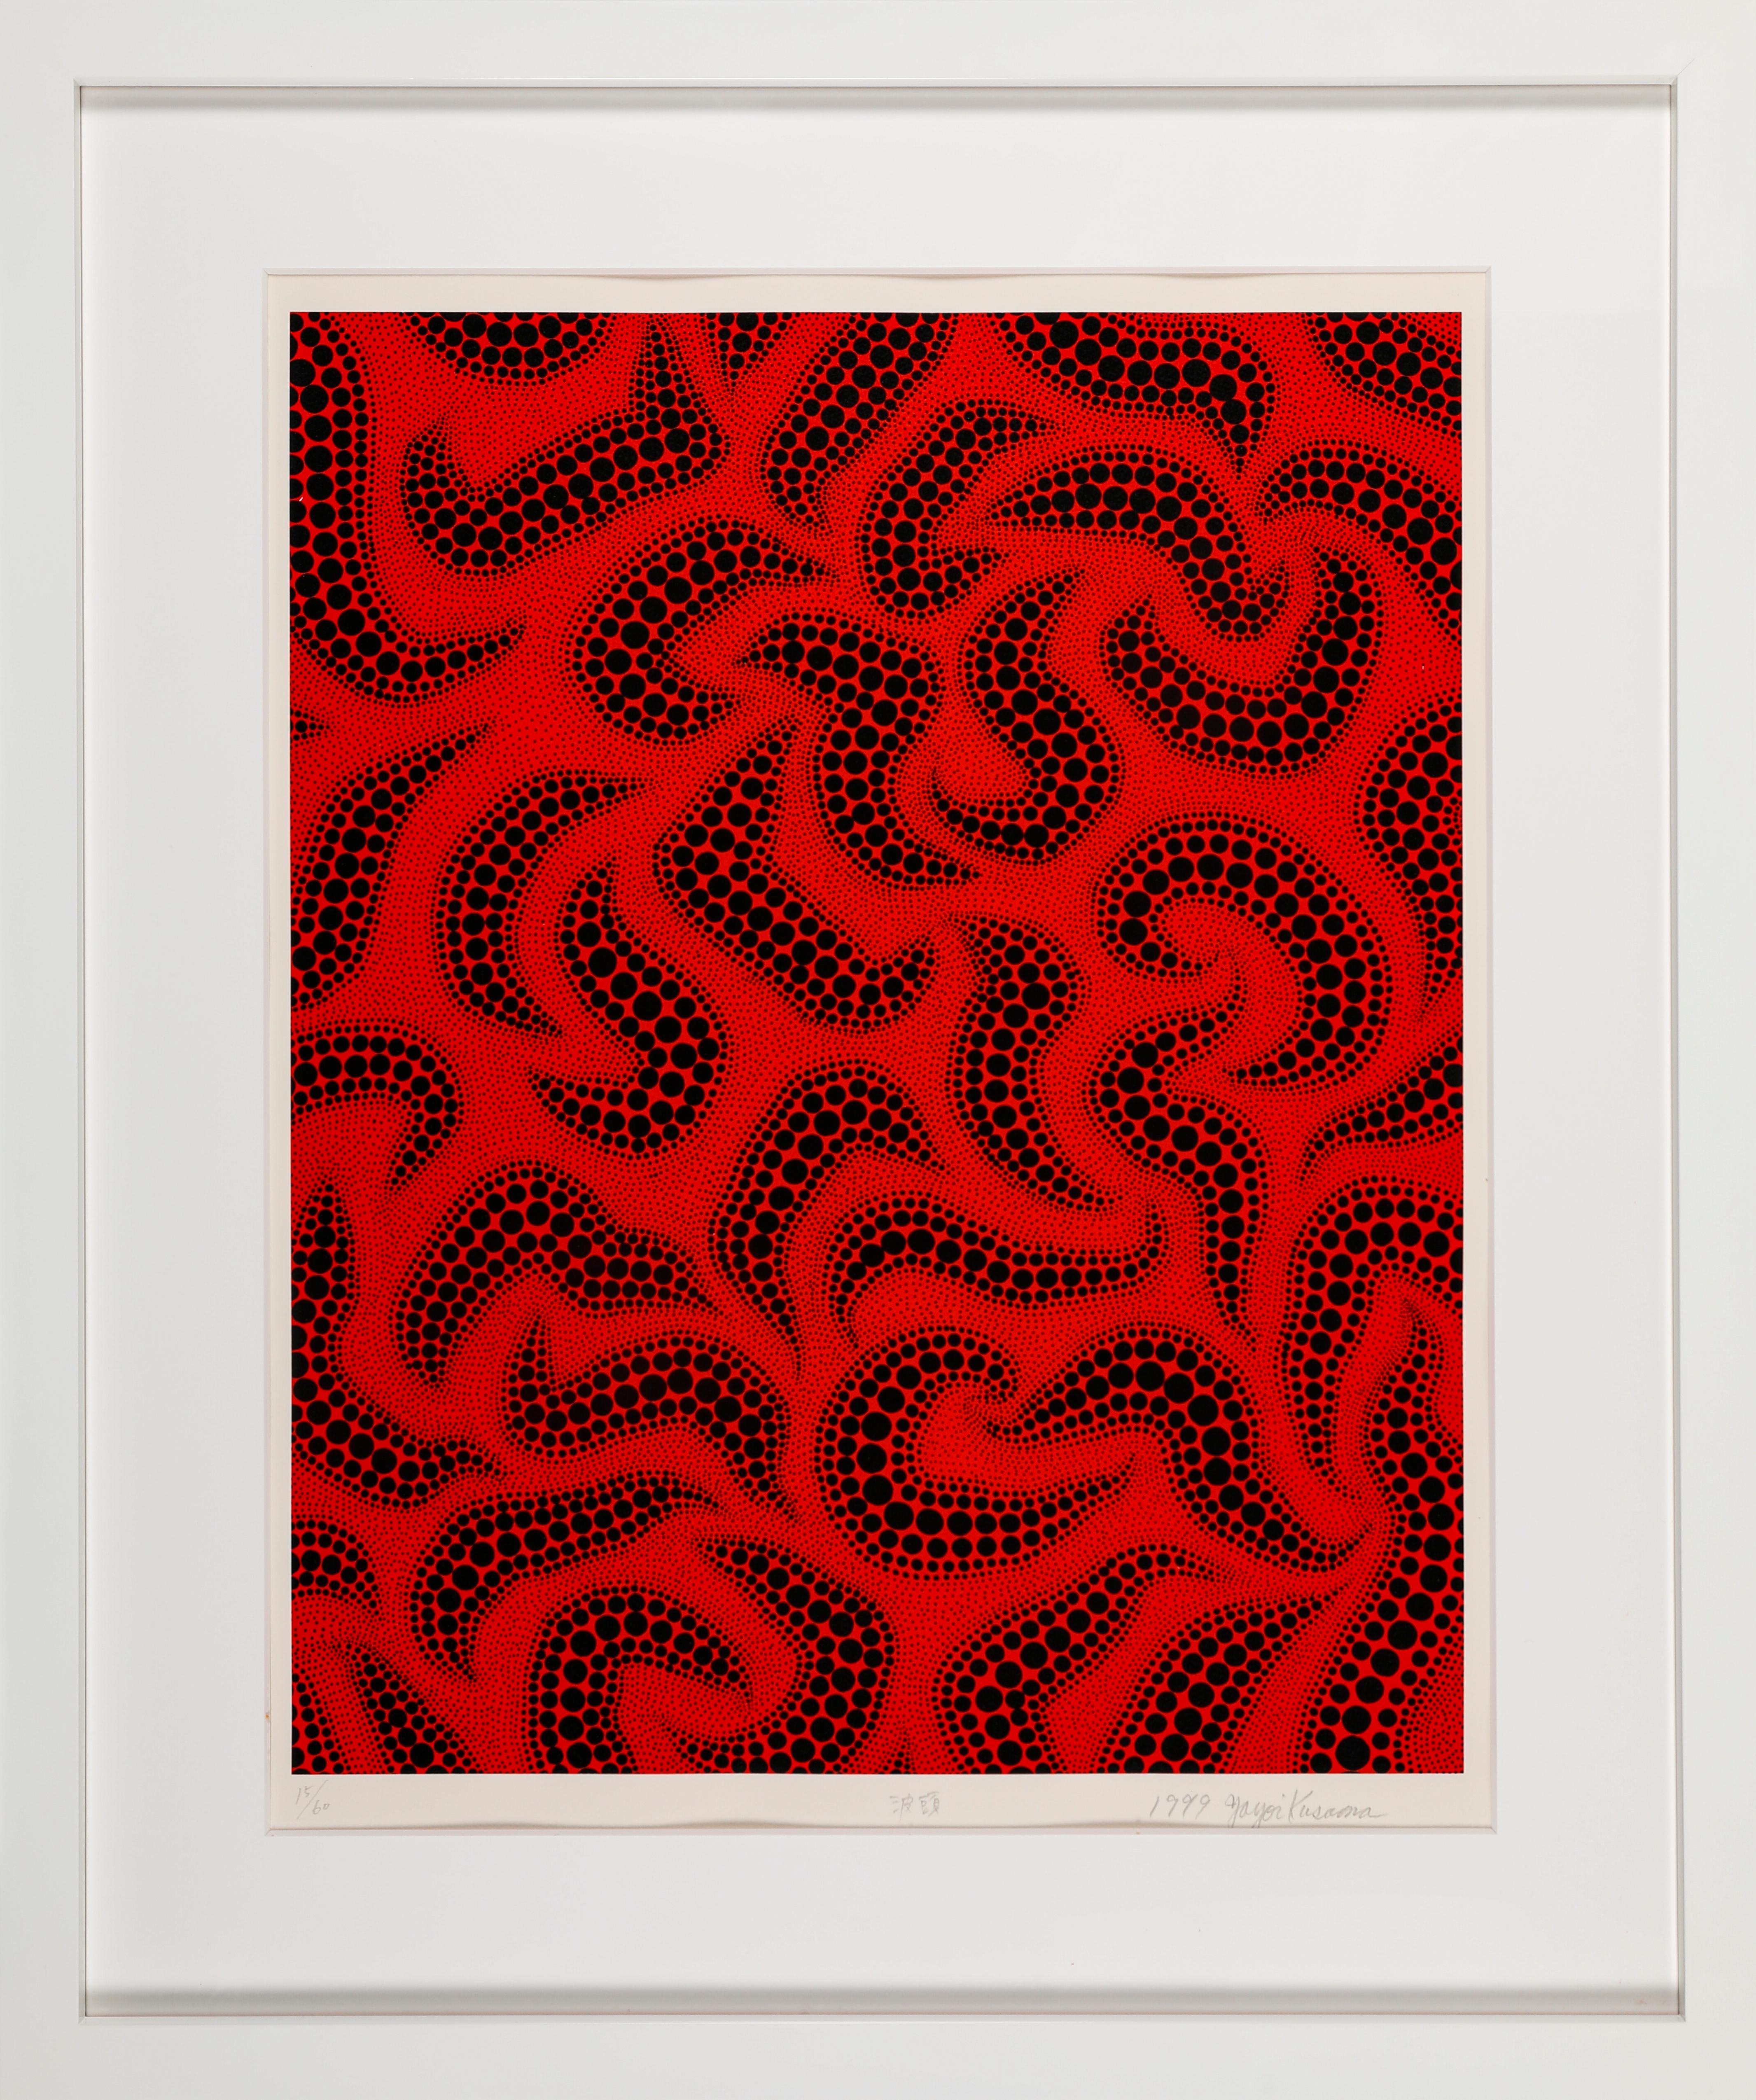 Yayoi Kusama 
Wave Crest (1999). Edition 15/60
Sérigraphie
[3 écrans, 2 couleurs, 3 courses]
59,7 x 47,8 cm (image) 
76x 56.5cm  (feuille)
Edition de 60 + 6 épreuves d'artiste + 5 épreuves d'imprimeur. 
Publié en 1999 sur papier Velin d'Arches par